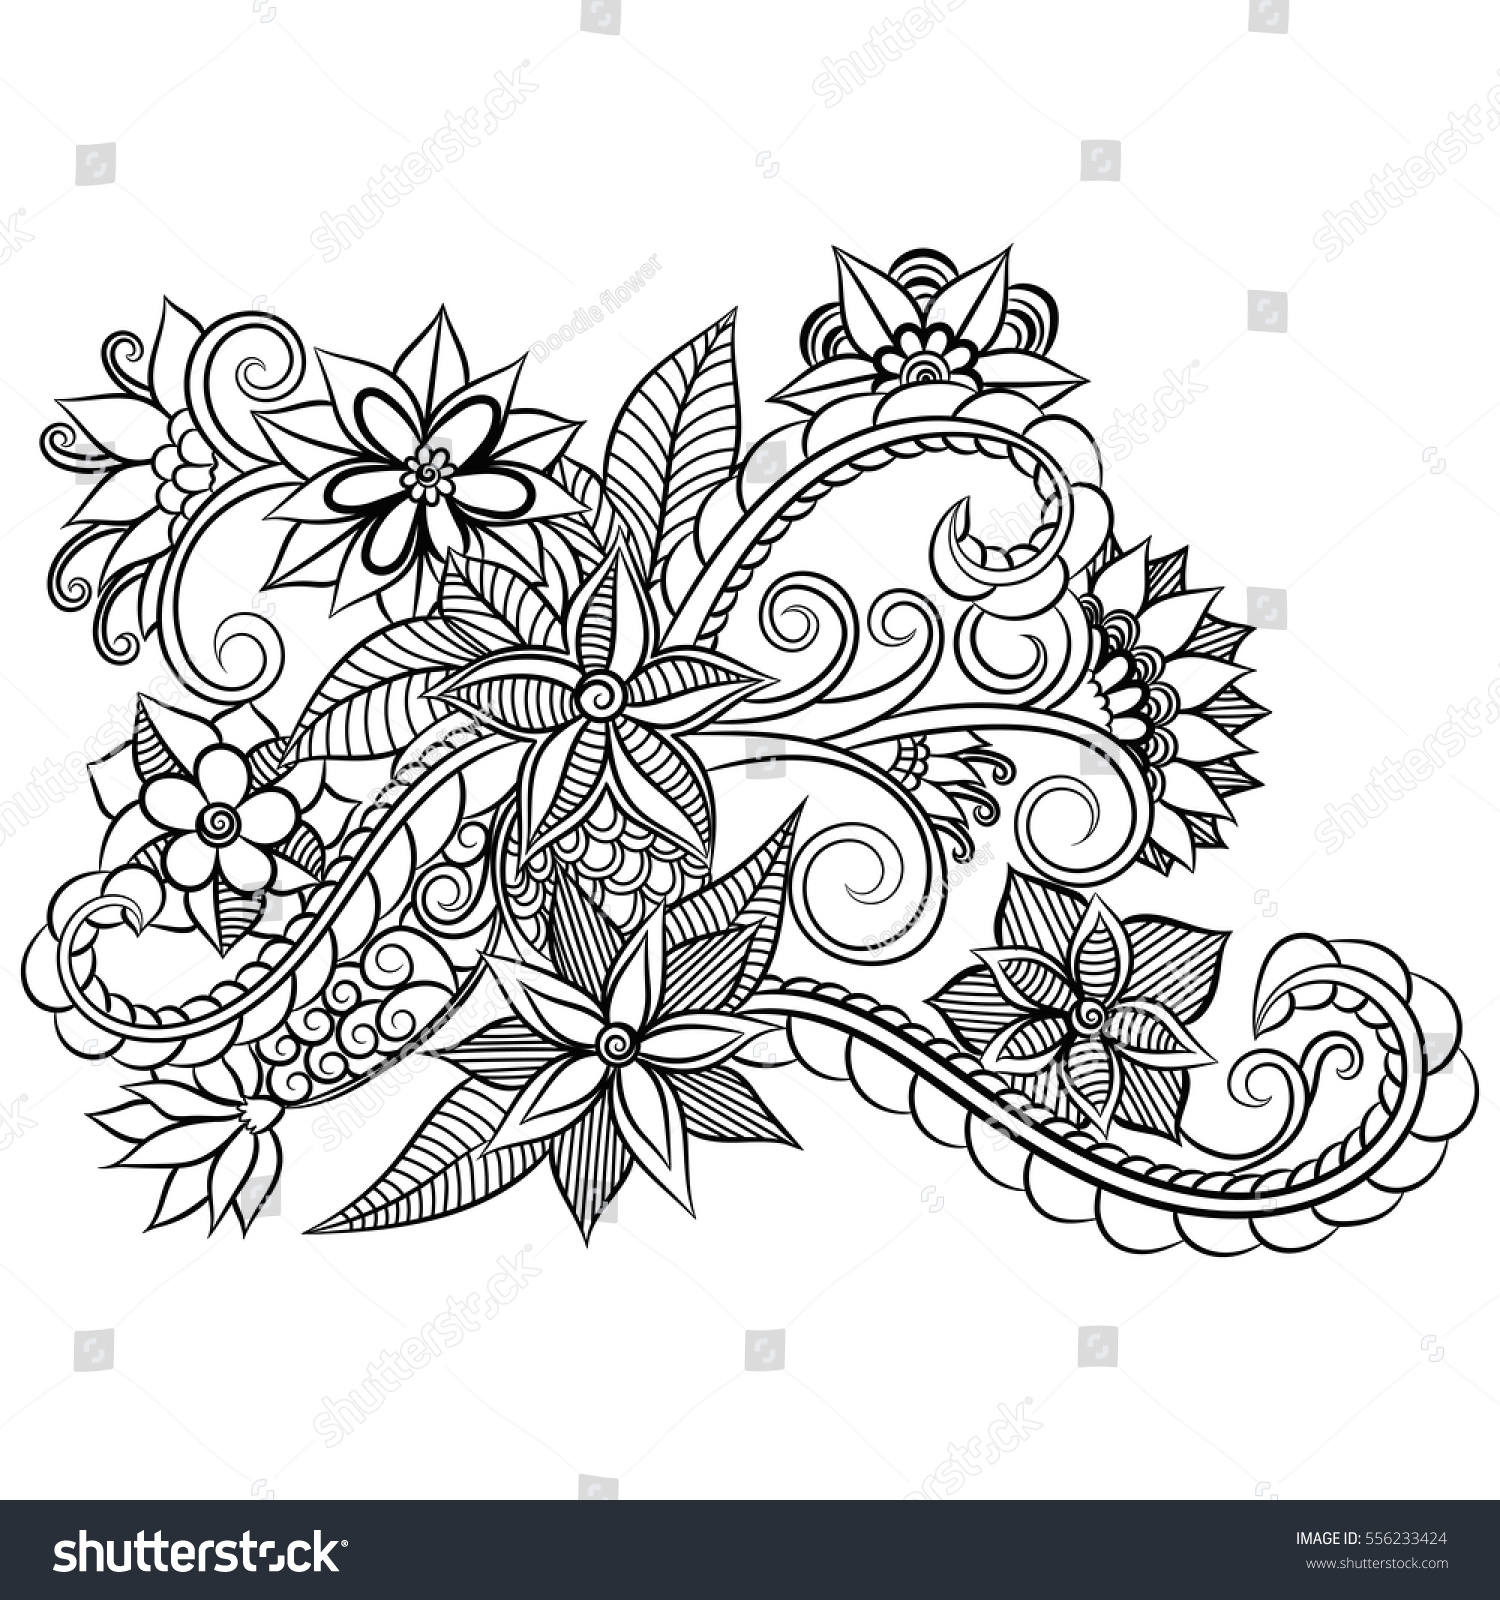 Zentangle Abstract Flowers Doodle Flower Vector Stock Vector